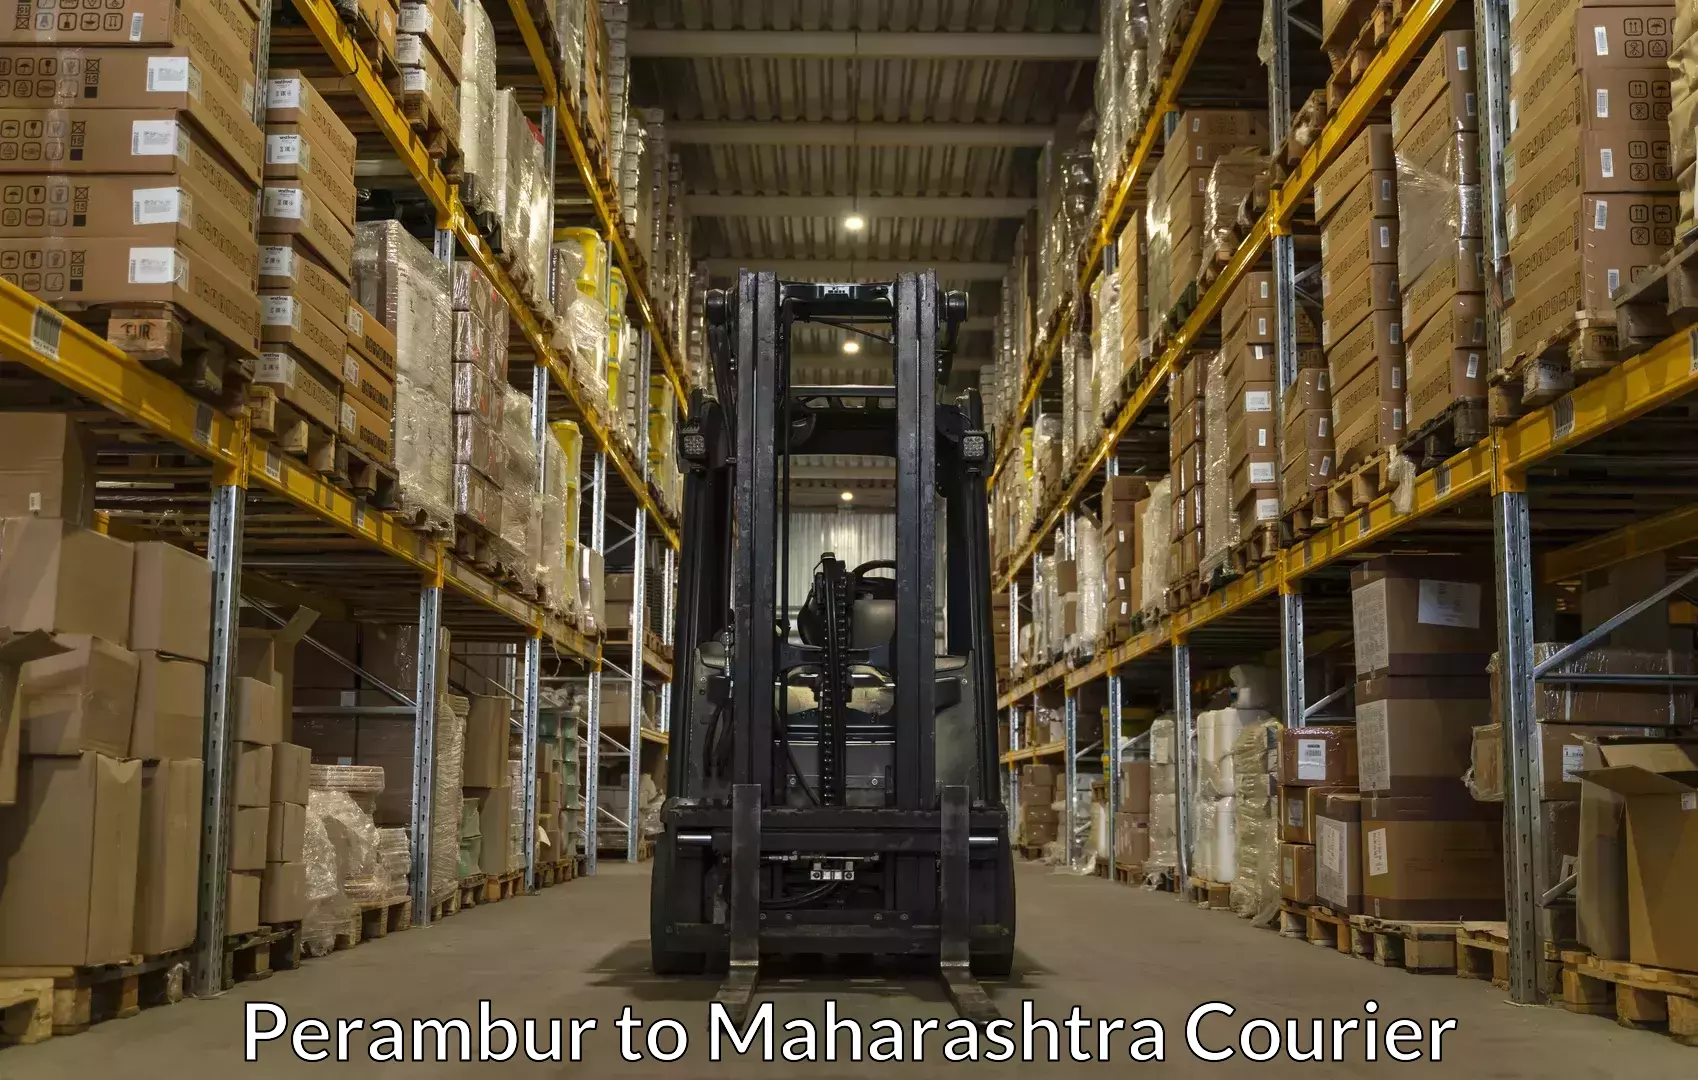 Baggage shipping experts Perambur to Dharmabad